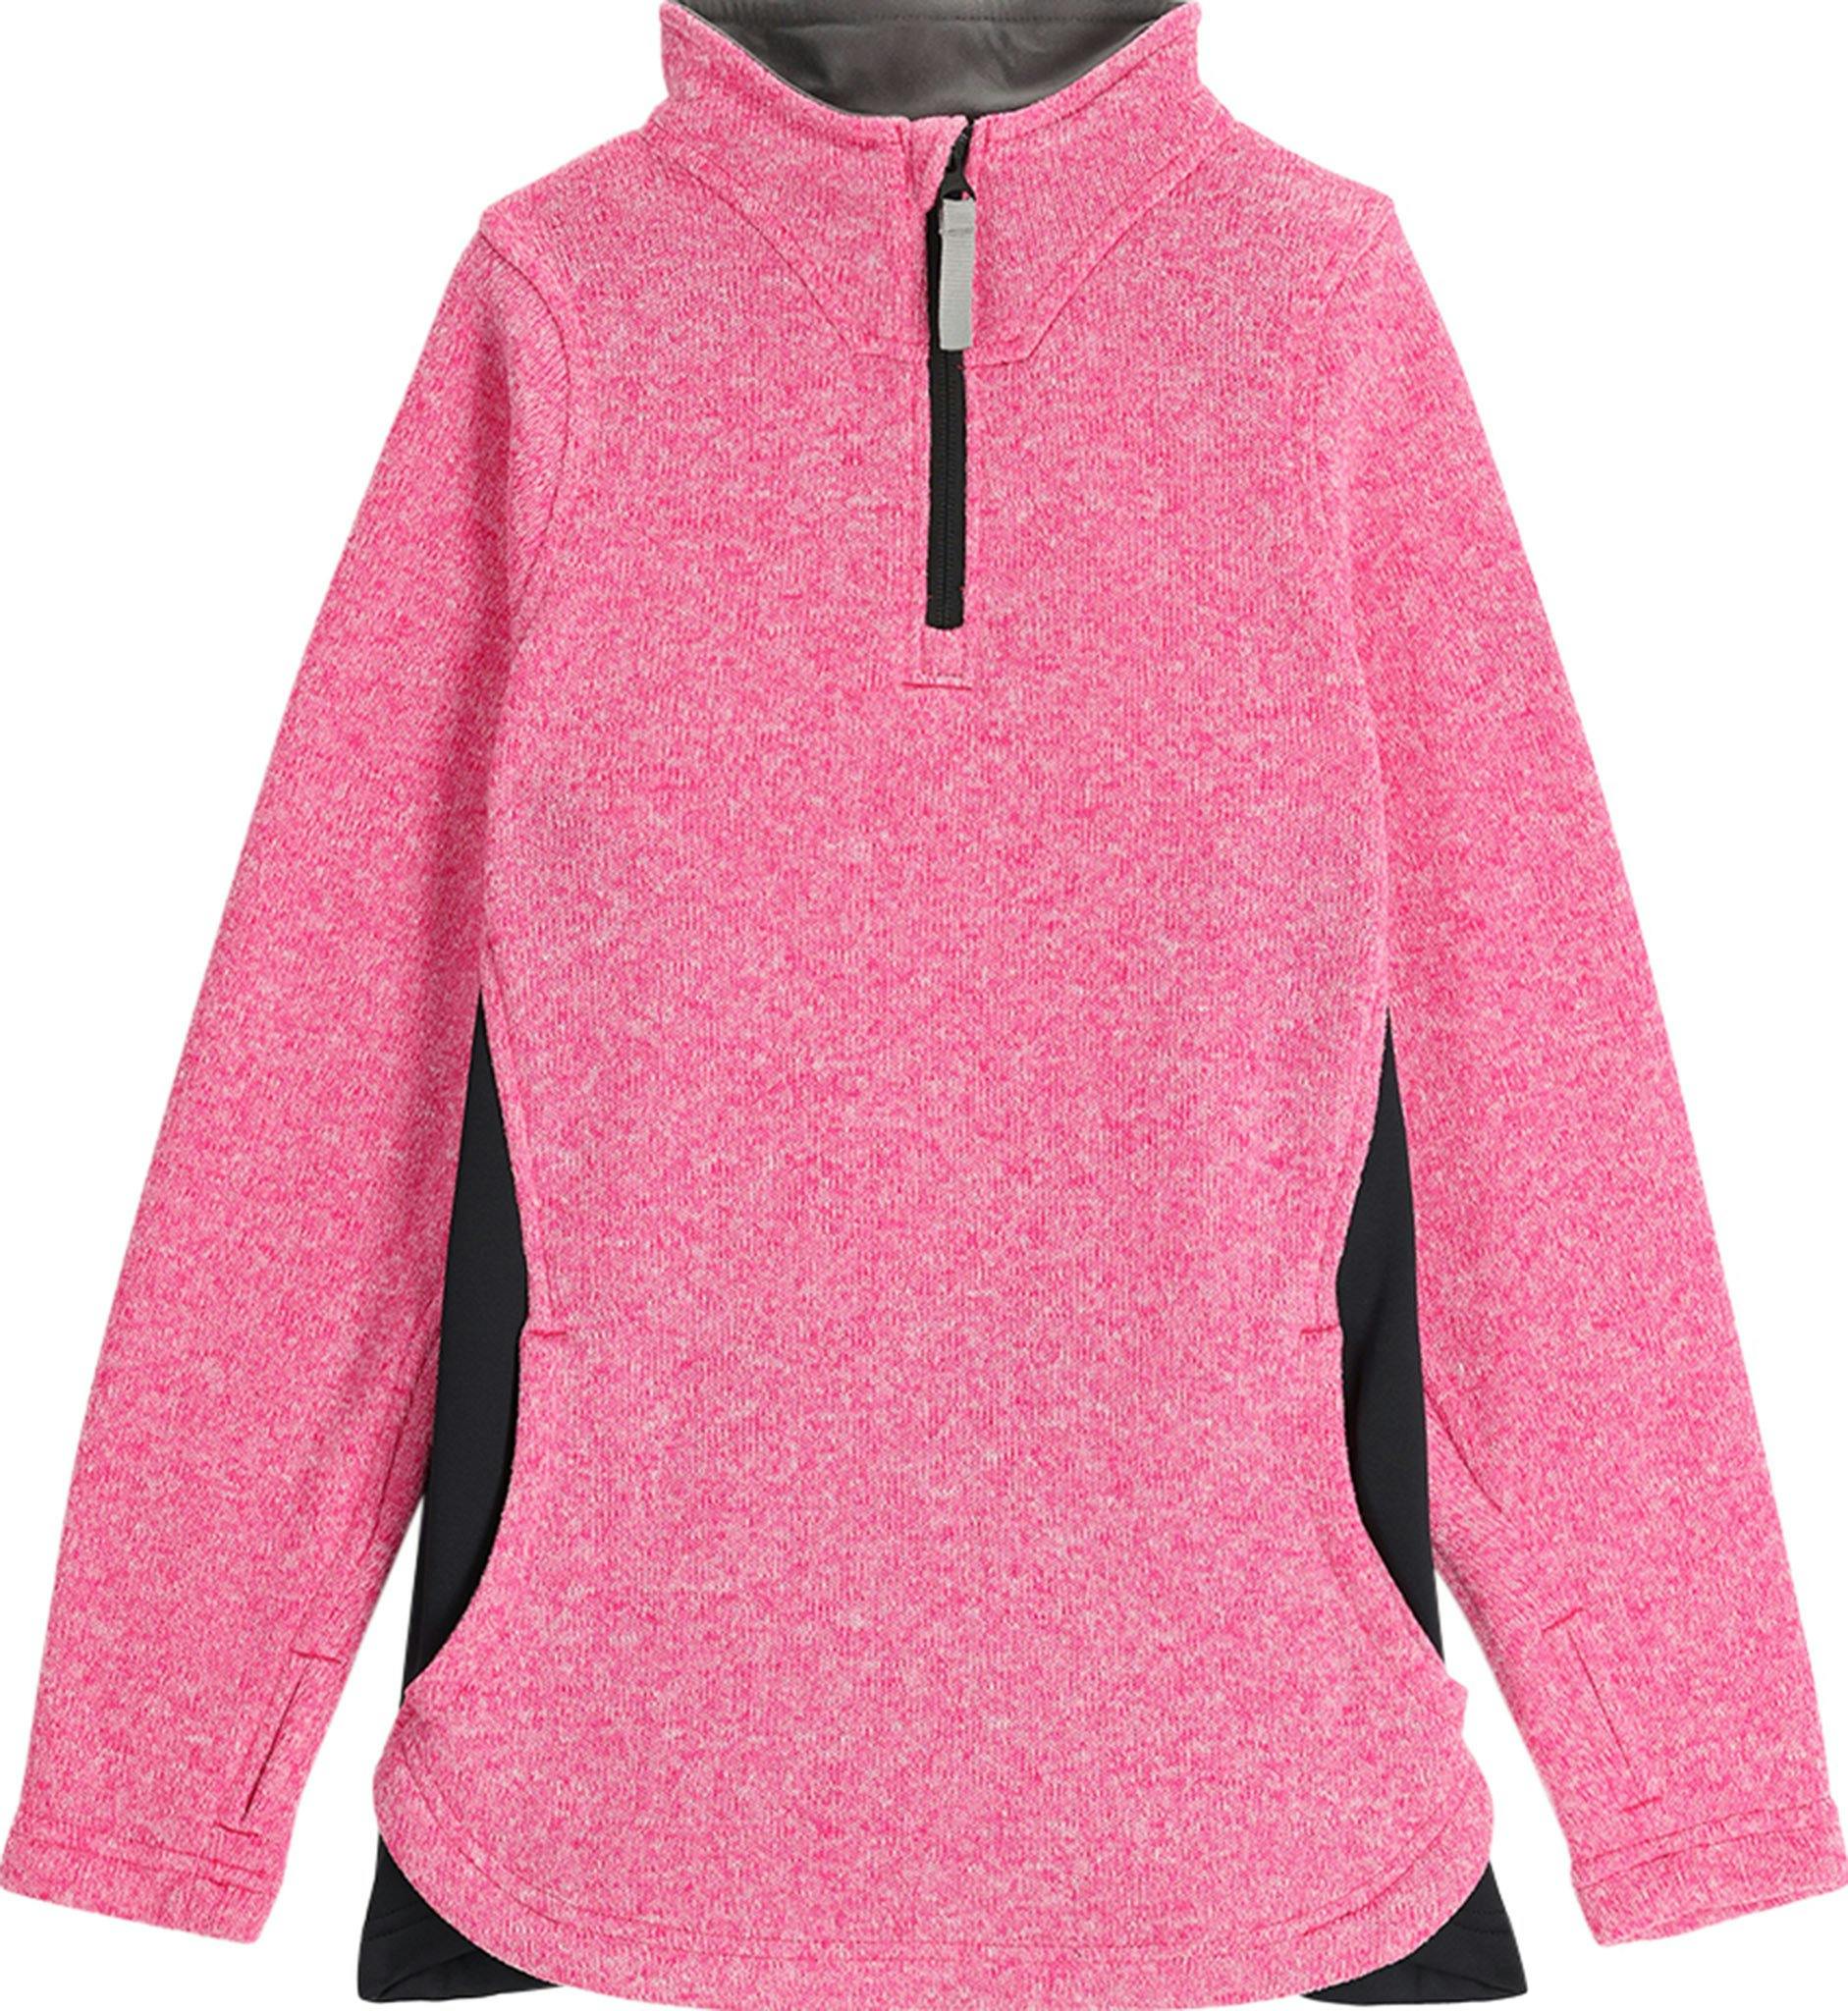 Product image for Aspire 1/2 Zip Fleece Sweater- Kids